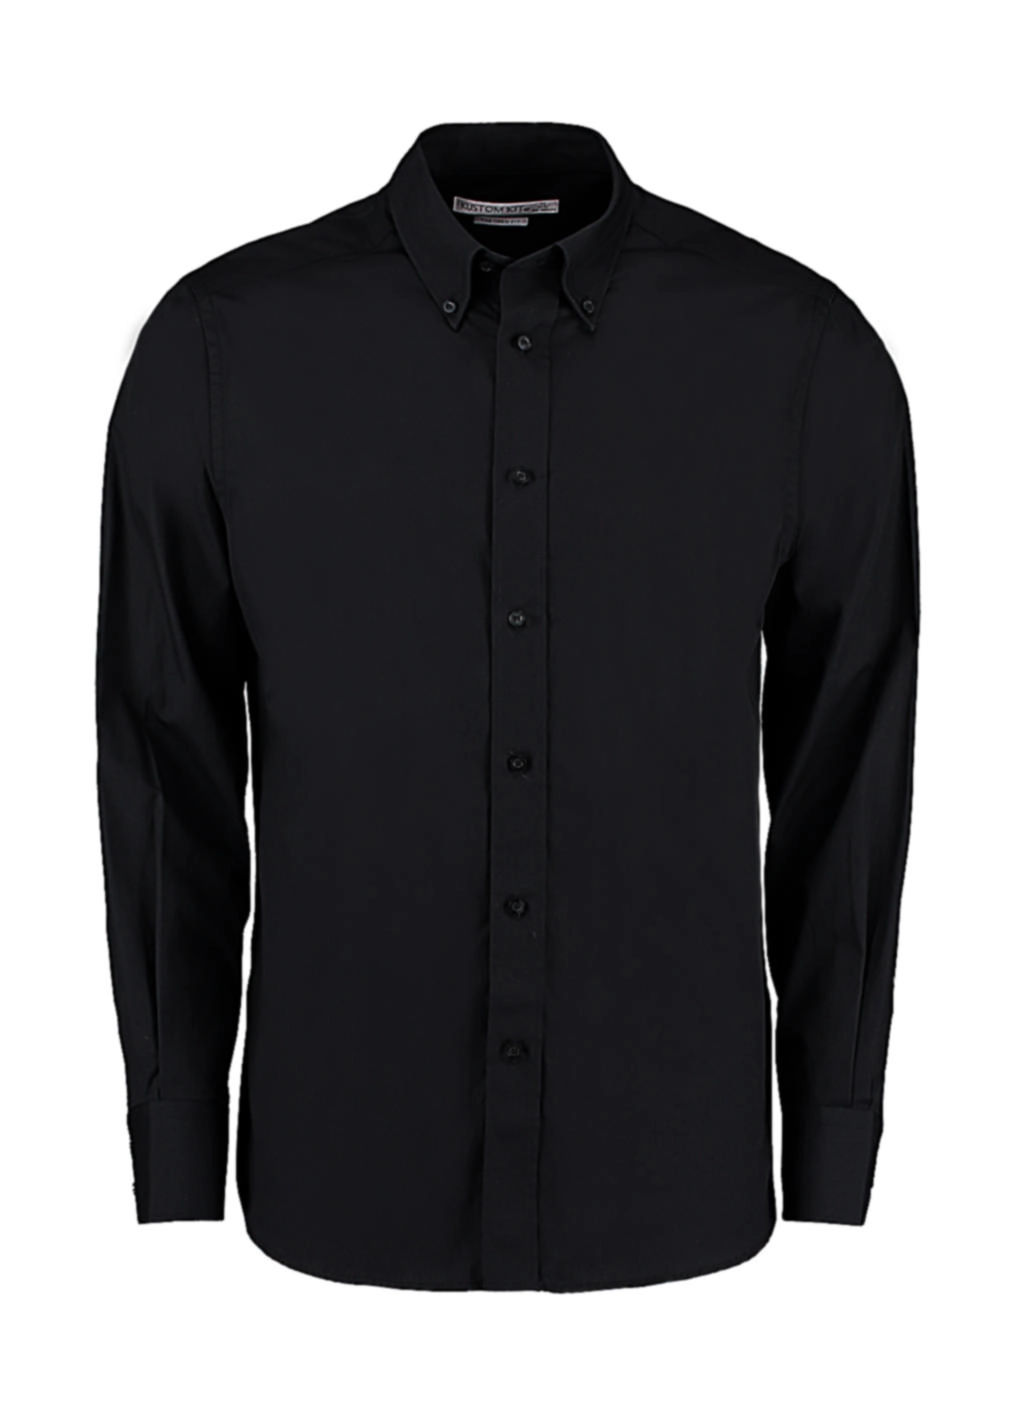 Tailored Fit City Shirt zum Besticken und Bedrucken in der Farbe Black mit Ihren Logo, Schriftzug oder Motiv.